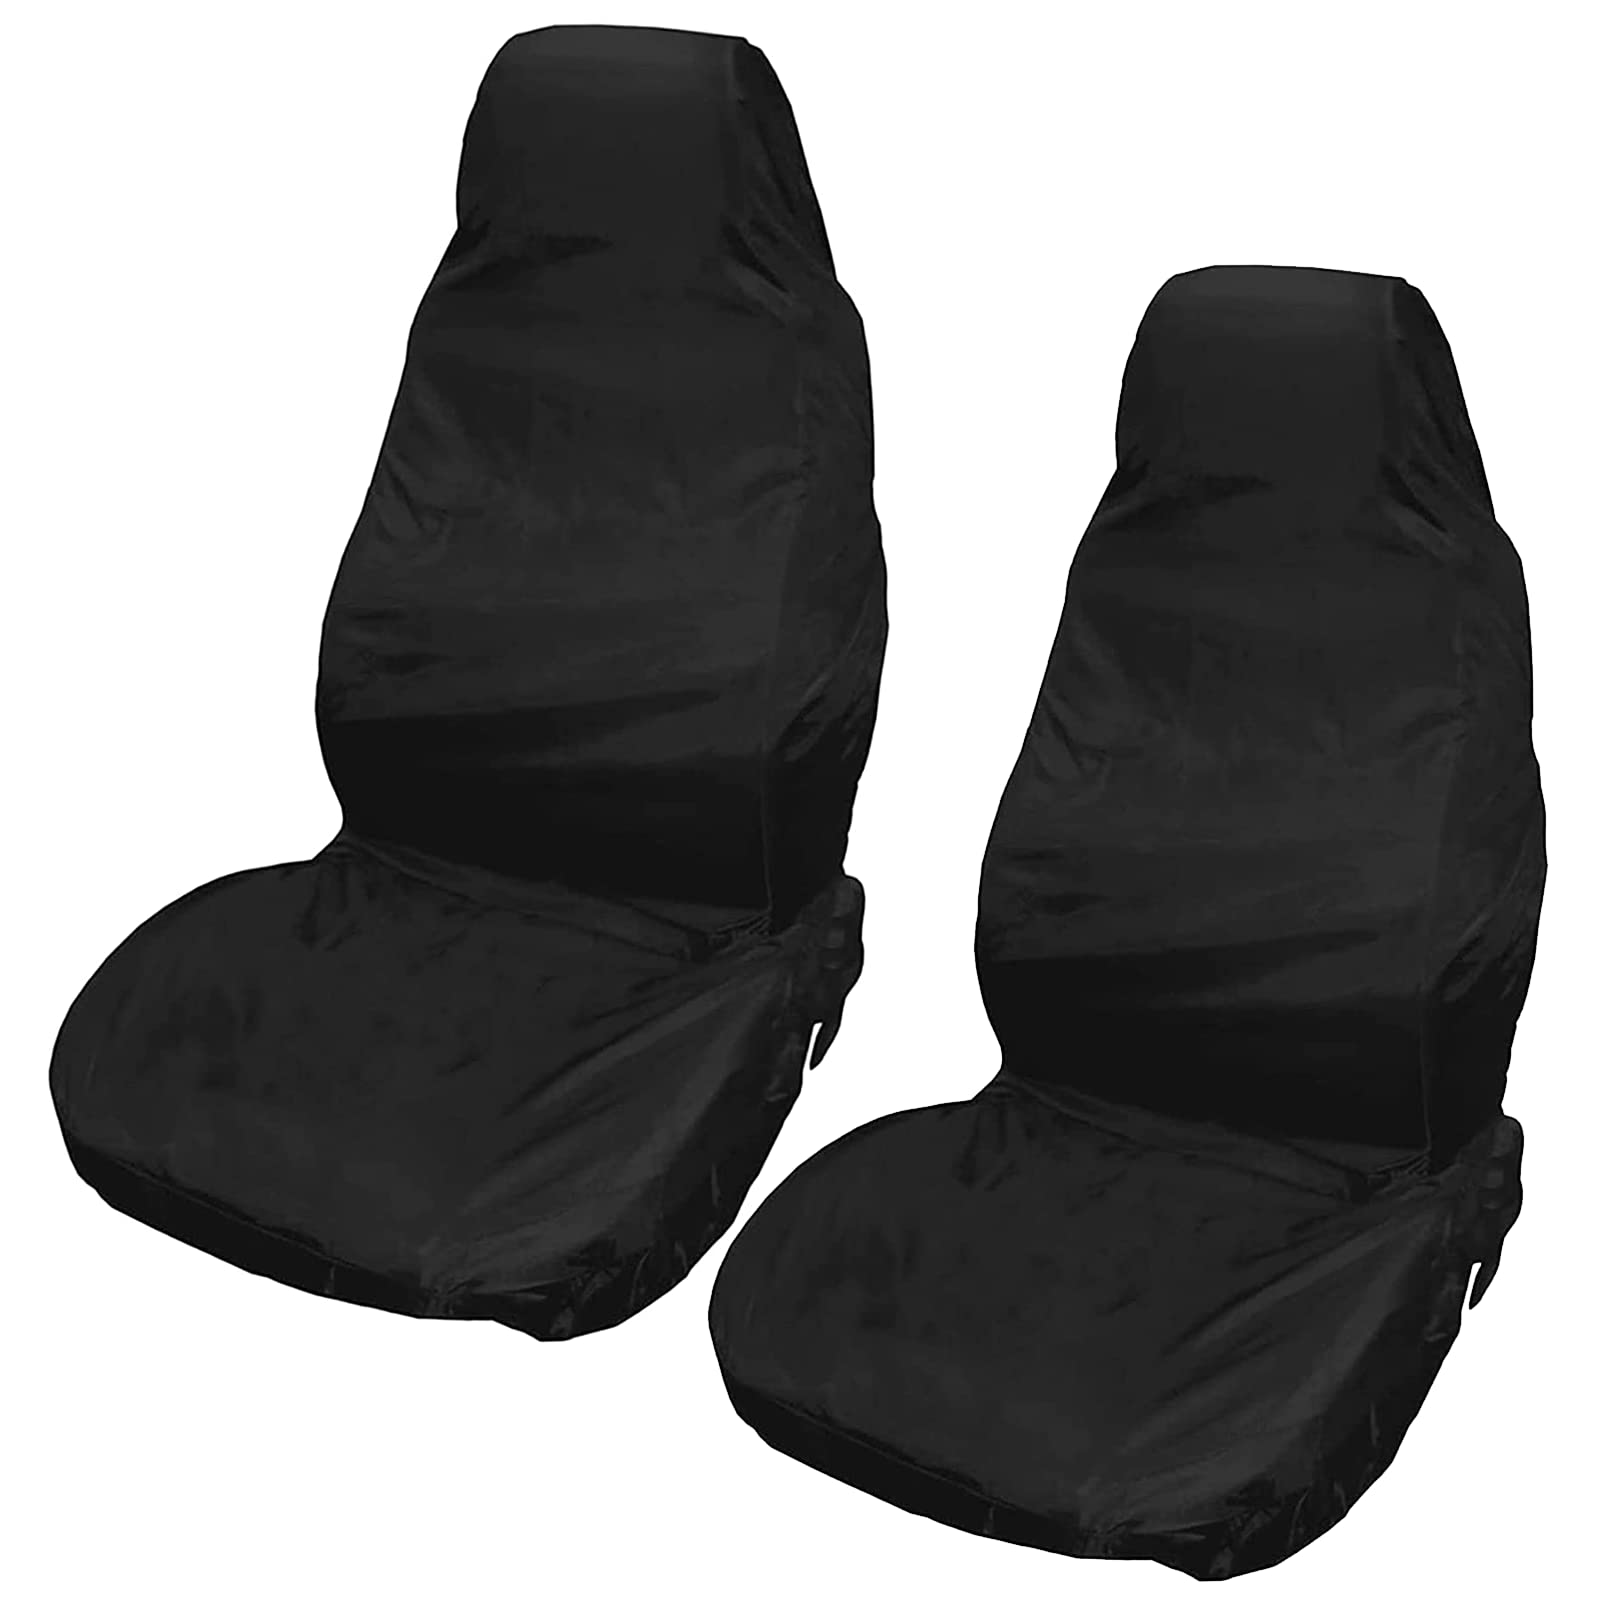 XtremeAuto® Sitzbezug für Transporter, robust, wasserdicht, mit extra hohem Rücken für Transportersitze, mit Airbag und Armstützen kompatibel.Schwarz. von Xtremeauto